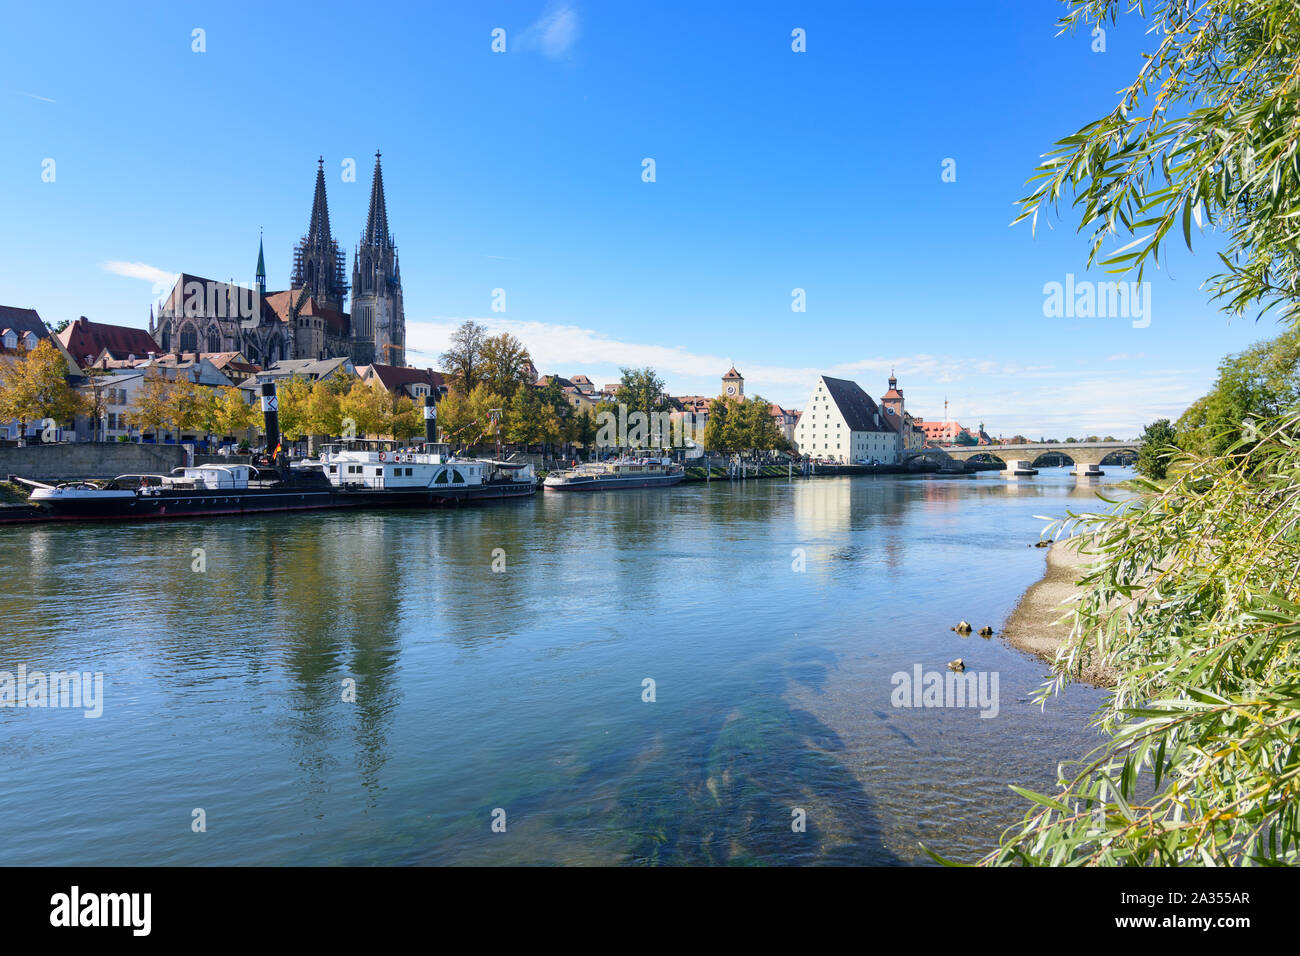 Regensburg: Río Donau (Danubio), Steinerne Brücke (puente de piedra), la Iglesia de San Pedro - la catedral de Ratisbona Oberpfalz, el Alto Palatinado, Bayer Foto de stock